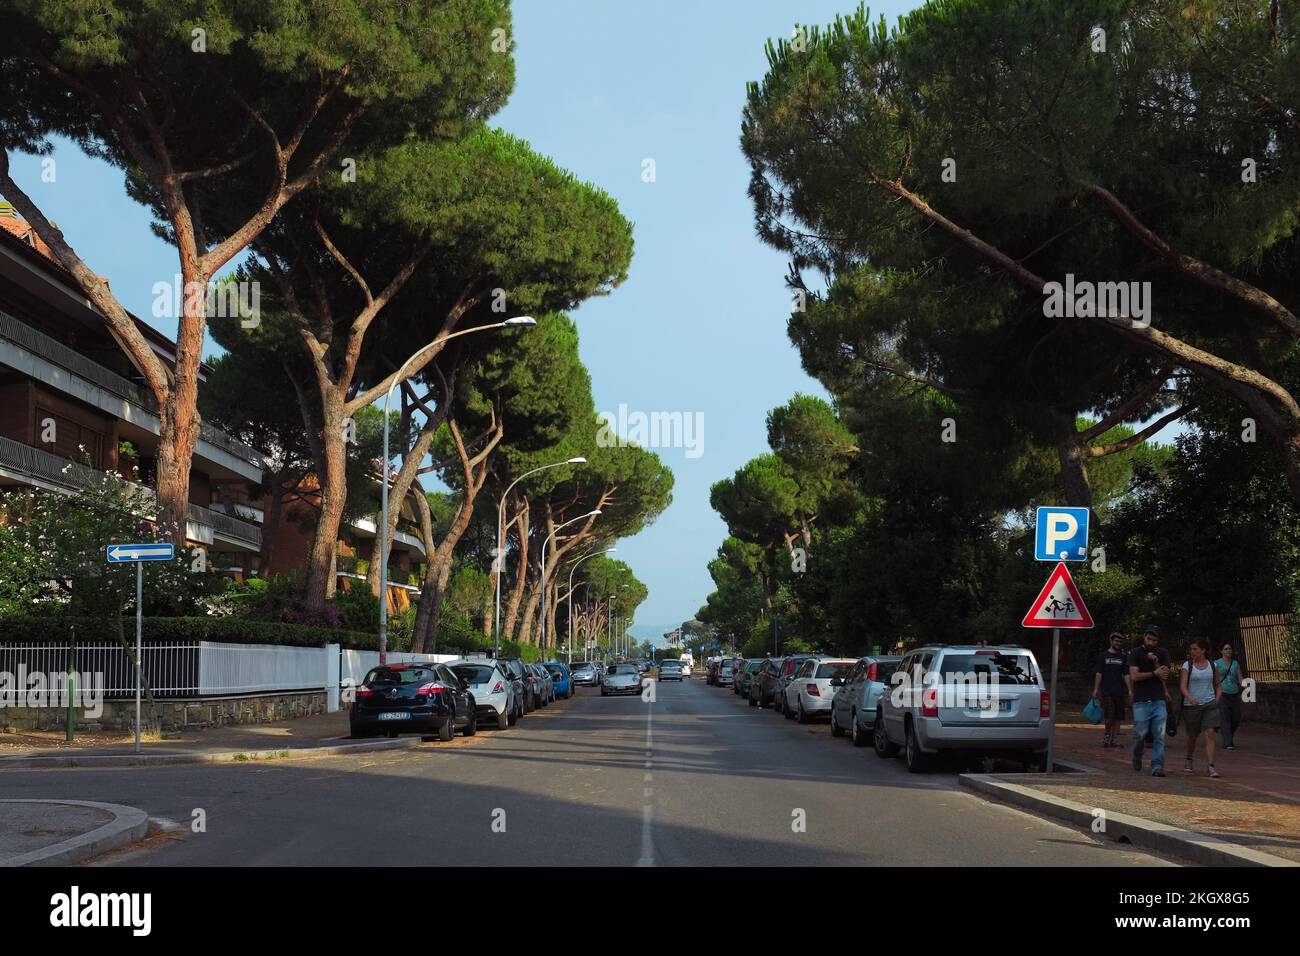 Rue bordée de voitures garées et de hauts pins de pierre italiens à l'extérieur de Parco Degli Acquedotti, un parc public Aqueduct à la périphérie de Rome, en Italie. Banque D'Images